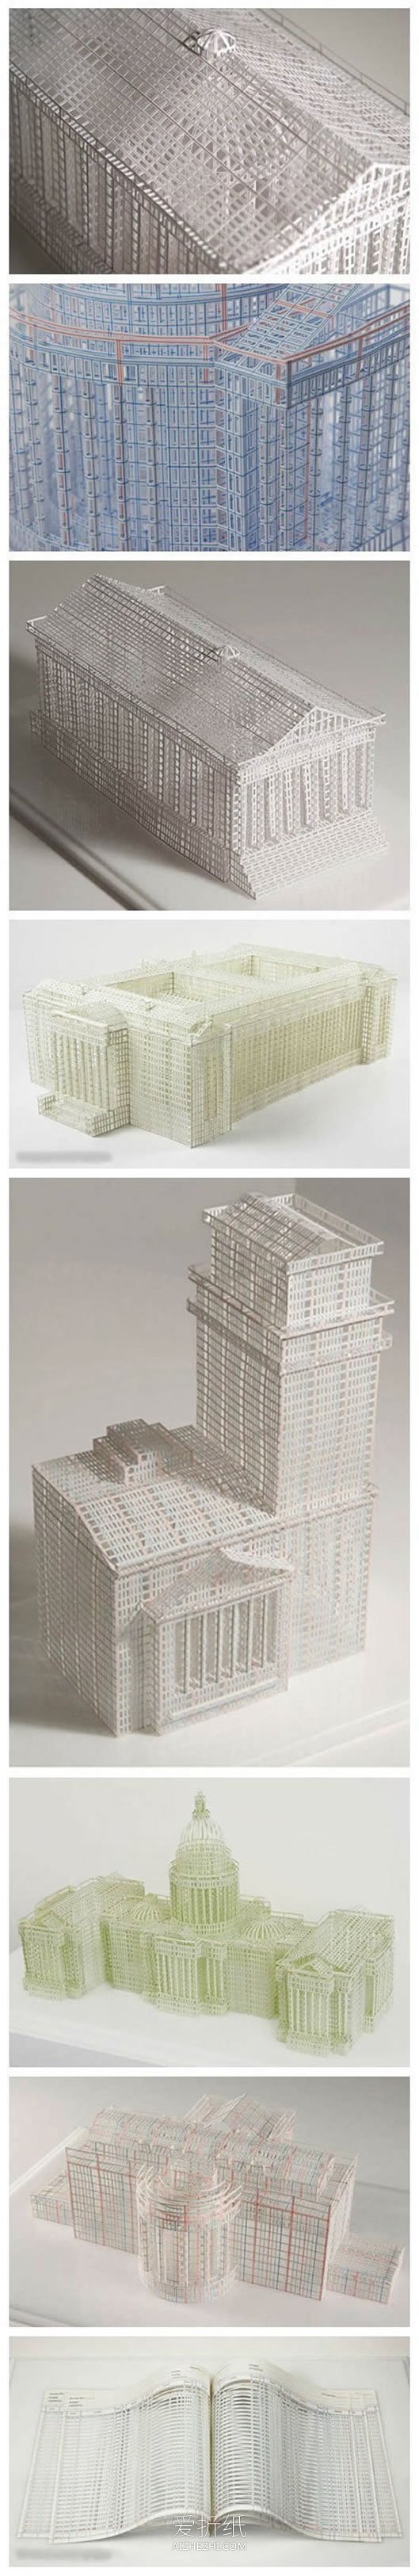 怎么做立体建筑物纸雕 账簿纸切割制作建筑物- www.aizhezhi.com